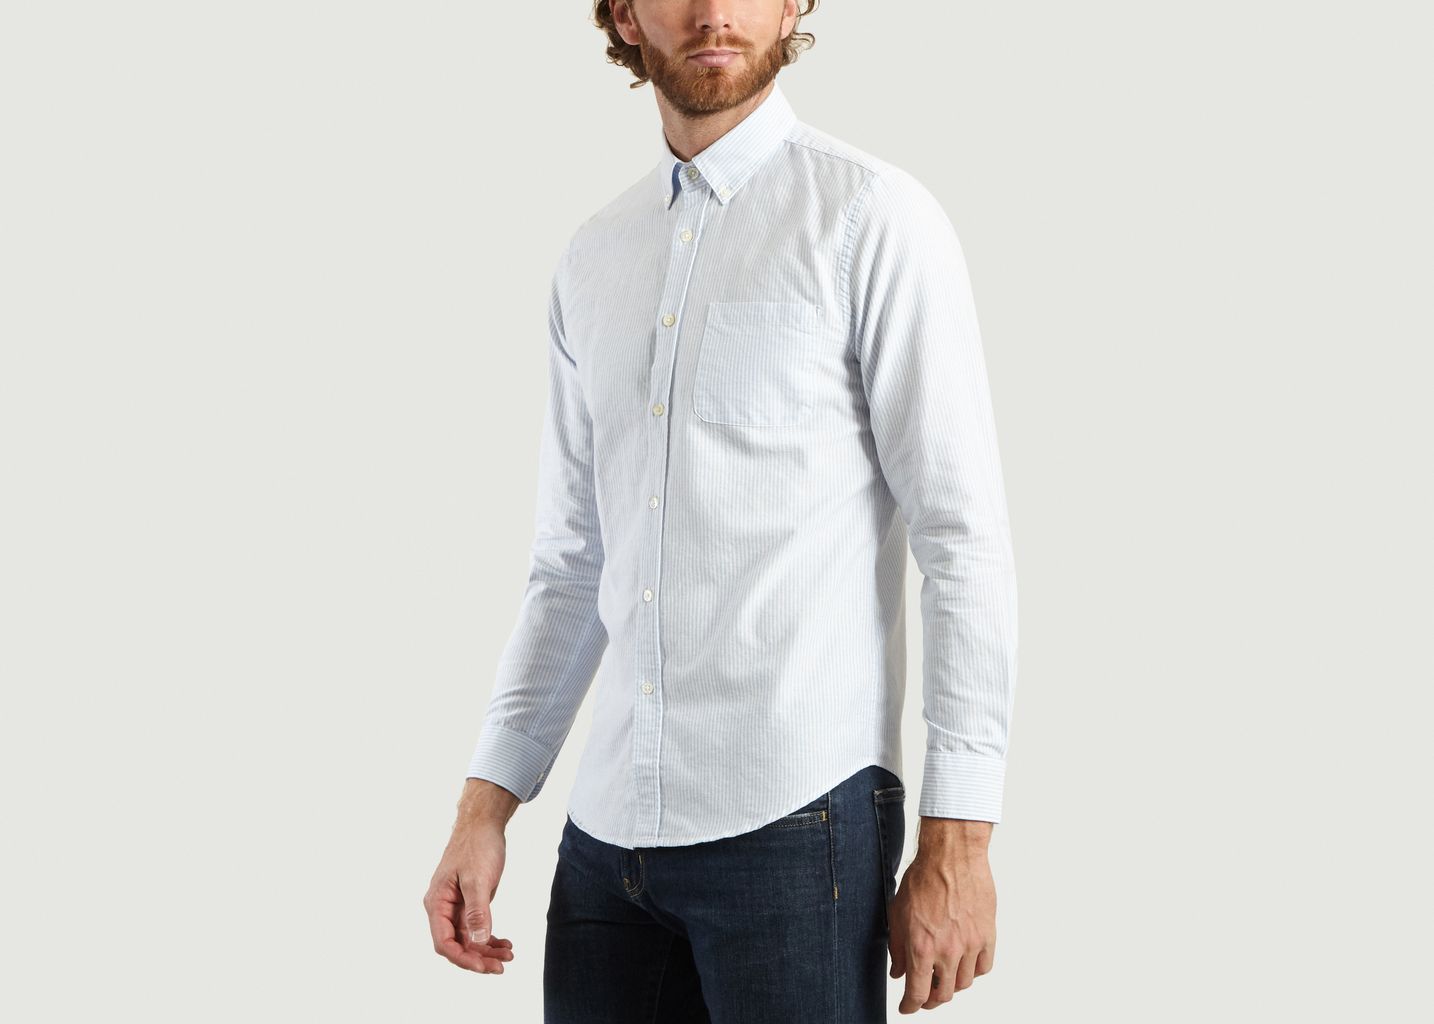 Bellaviste Striped Shirt - Portuguese Flannel